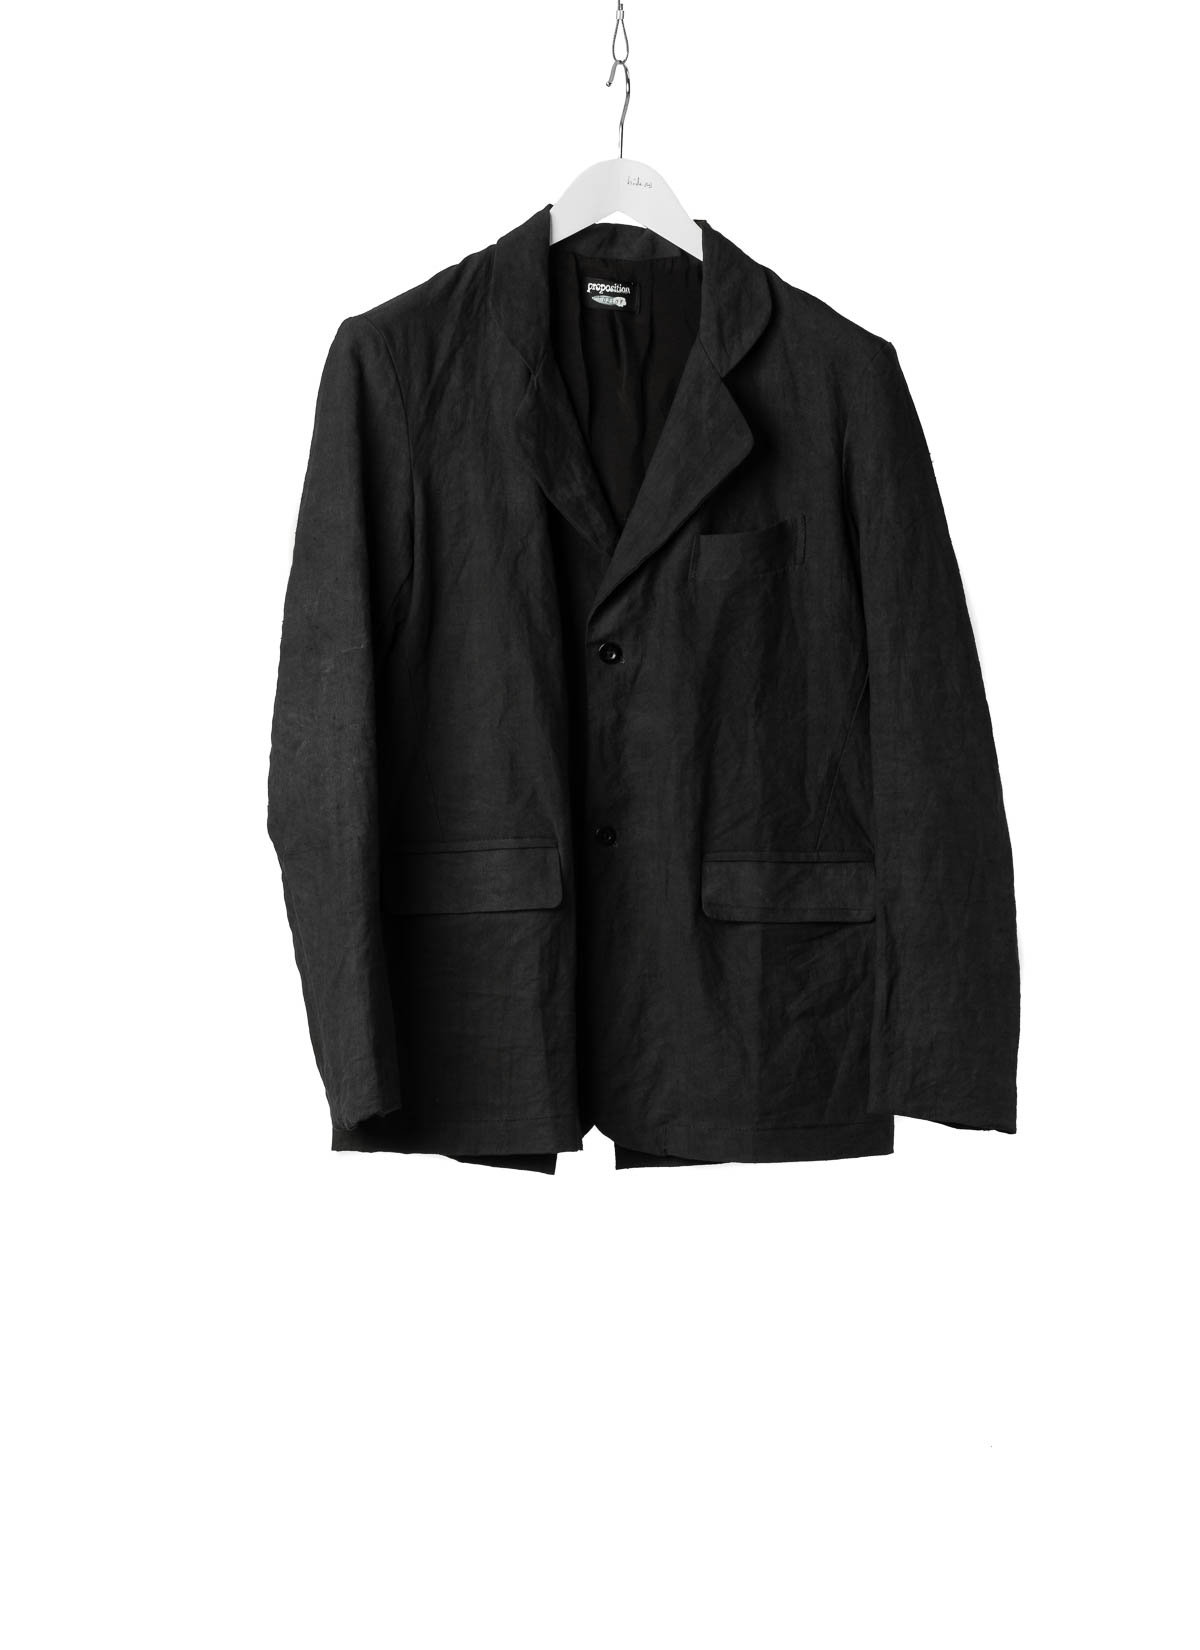 hide-m | PROPOSITION CLOTHING Tailored Jacket, black antique linen